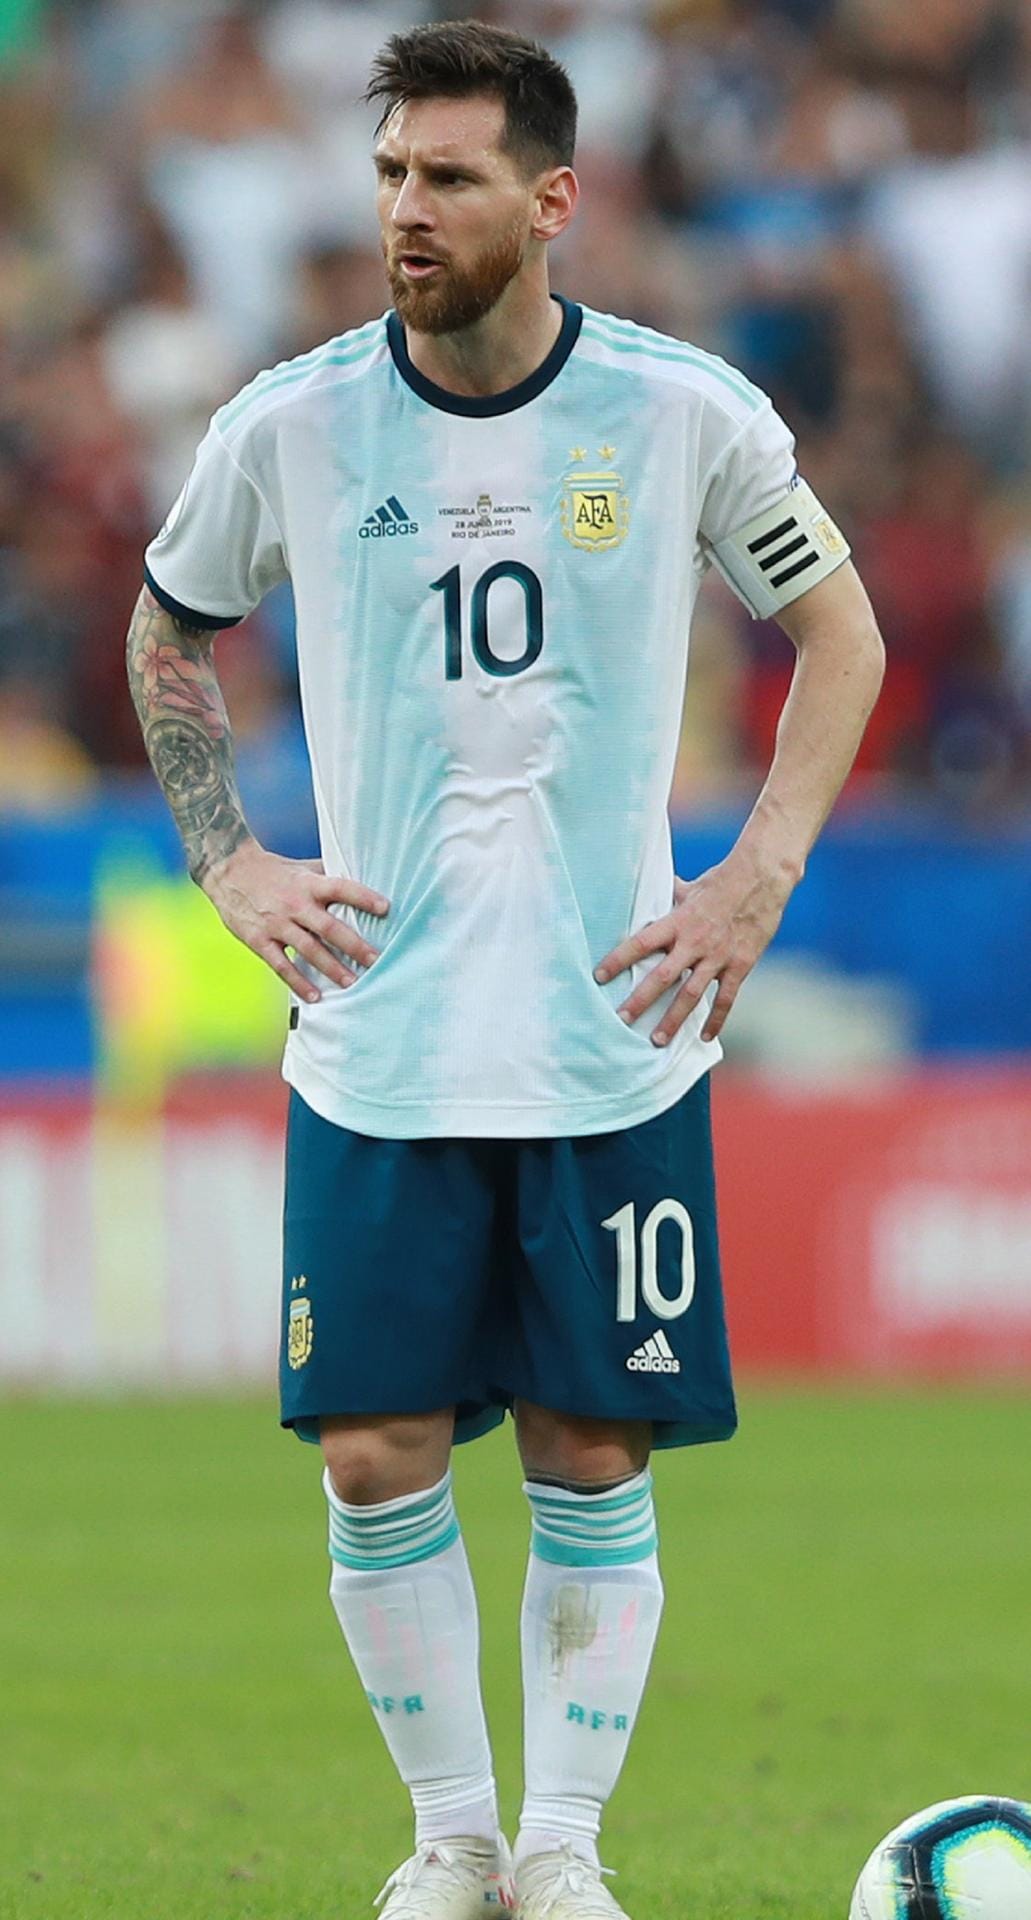 Platz 4: Fußballer Lionel Messi (127 Millionen US-Dollar)